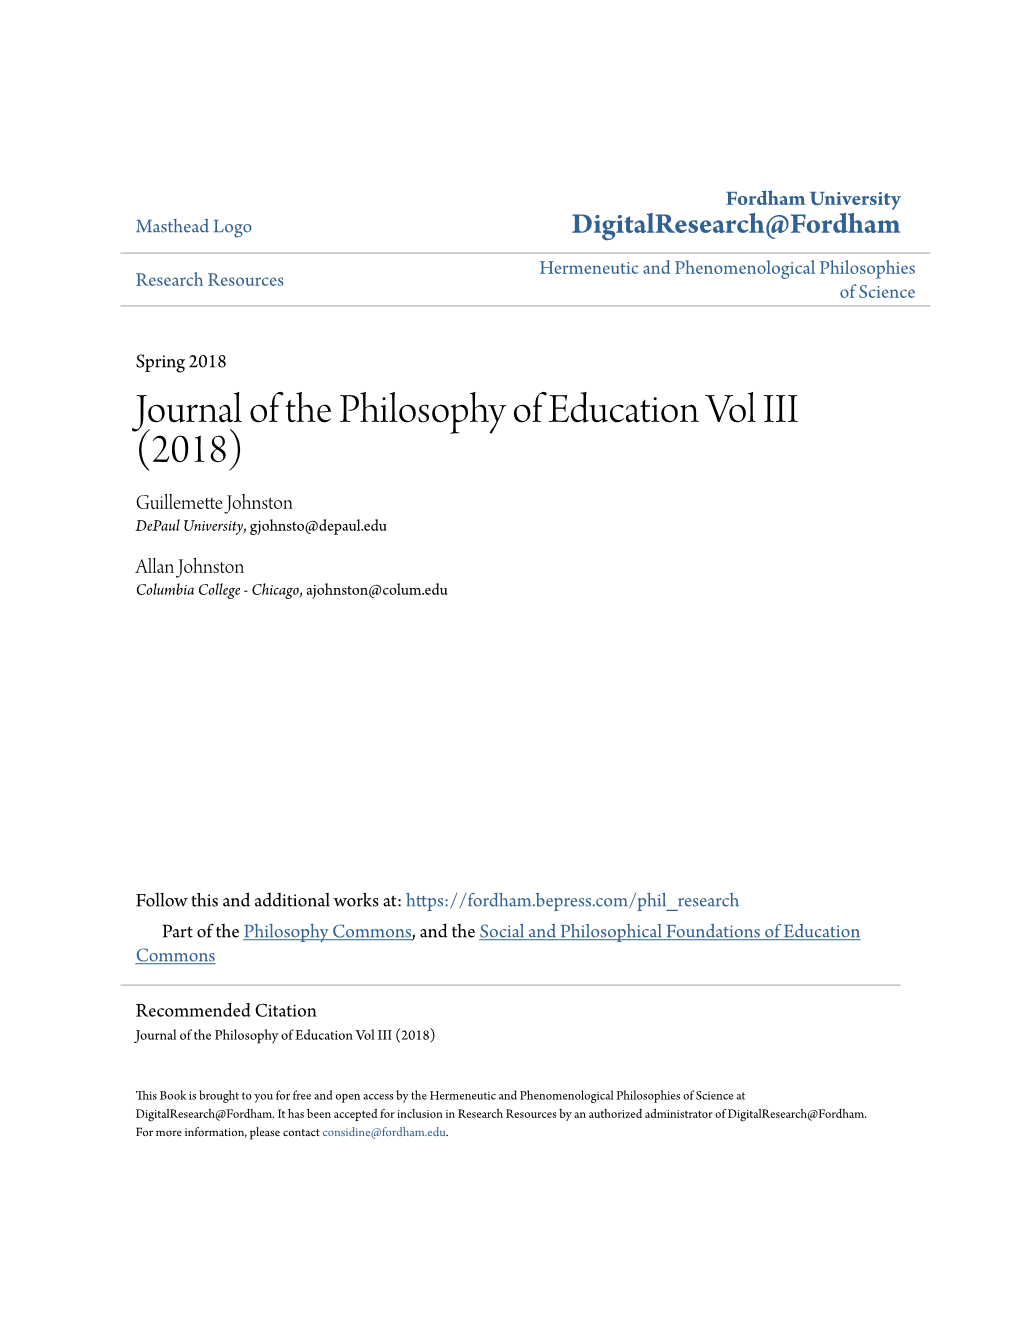 Journal of the Philosophy of Education Vol III (2018) Guillemette Johnston Depaul University, Gjohnsto@Depaul.Edu